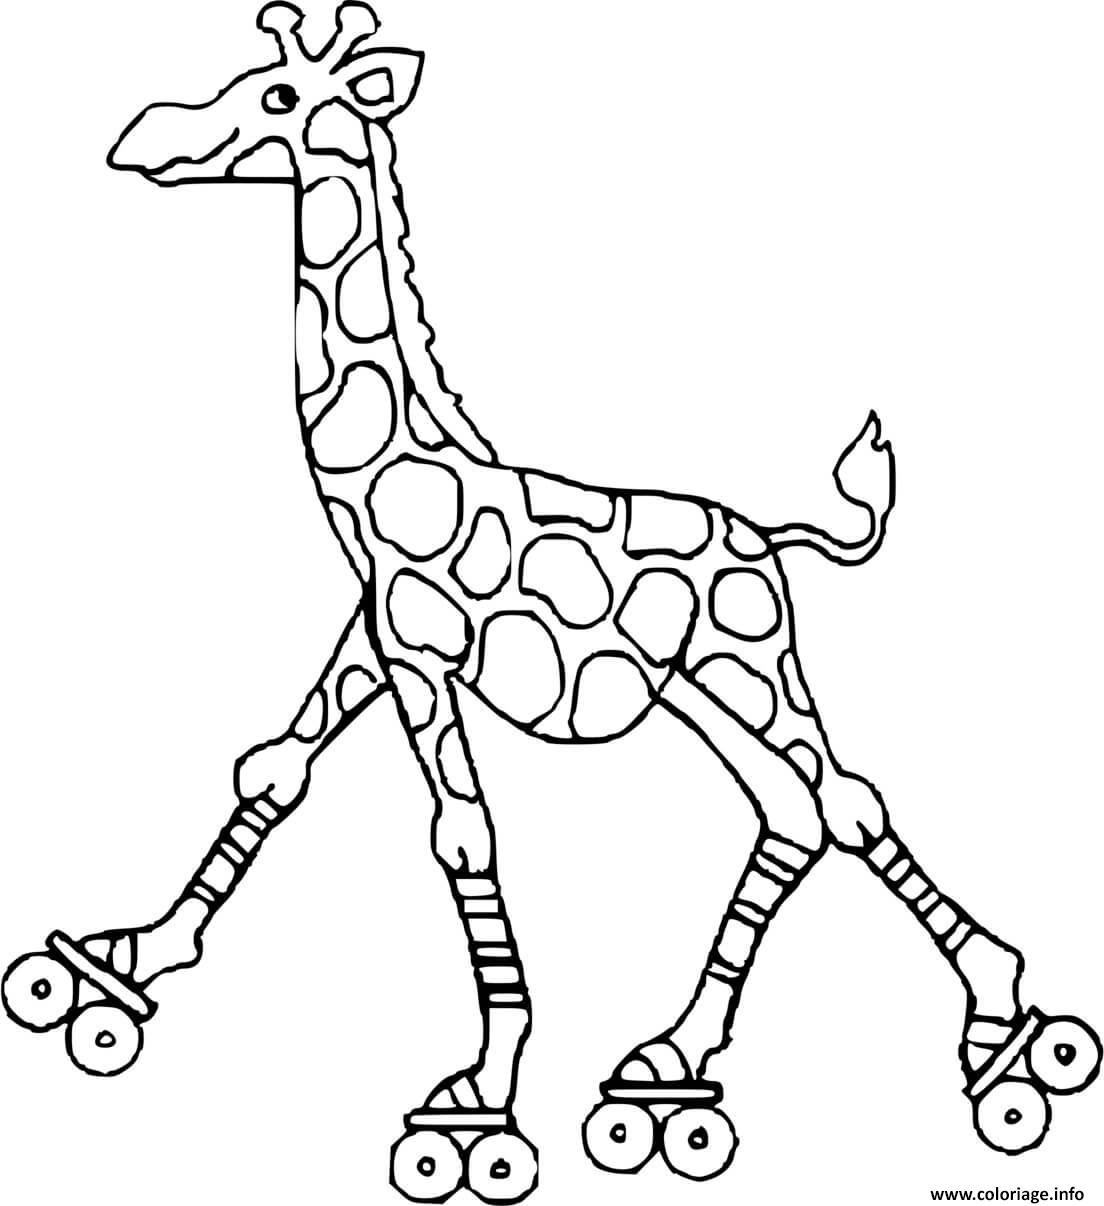 Dessin girafe avec des patins a roulettes Coloriage Gratuit à Imprimer